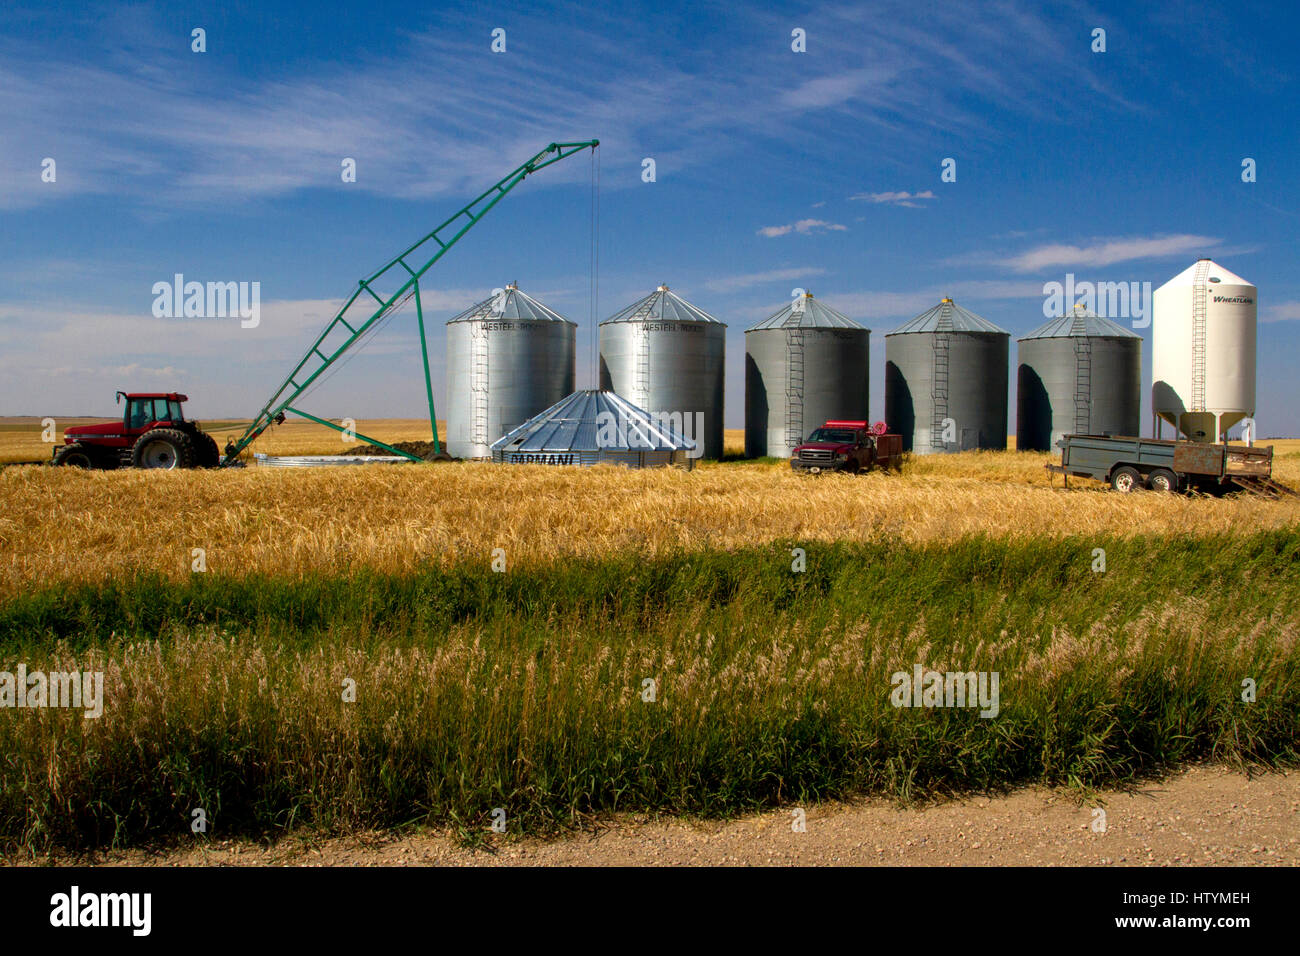 Grain Silos or grain storage bins on farmland in Alberta, Canada Stock Photo